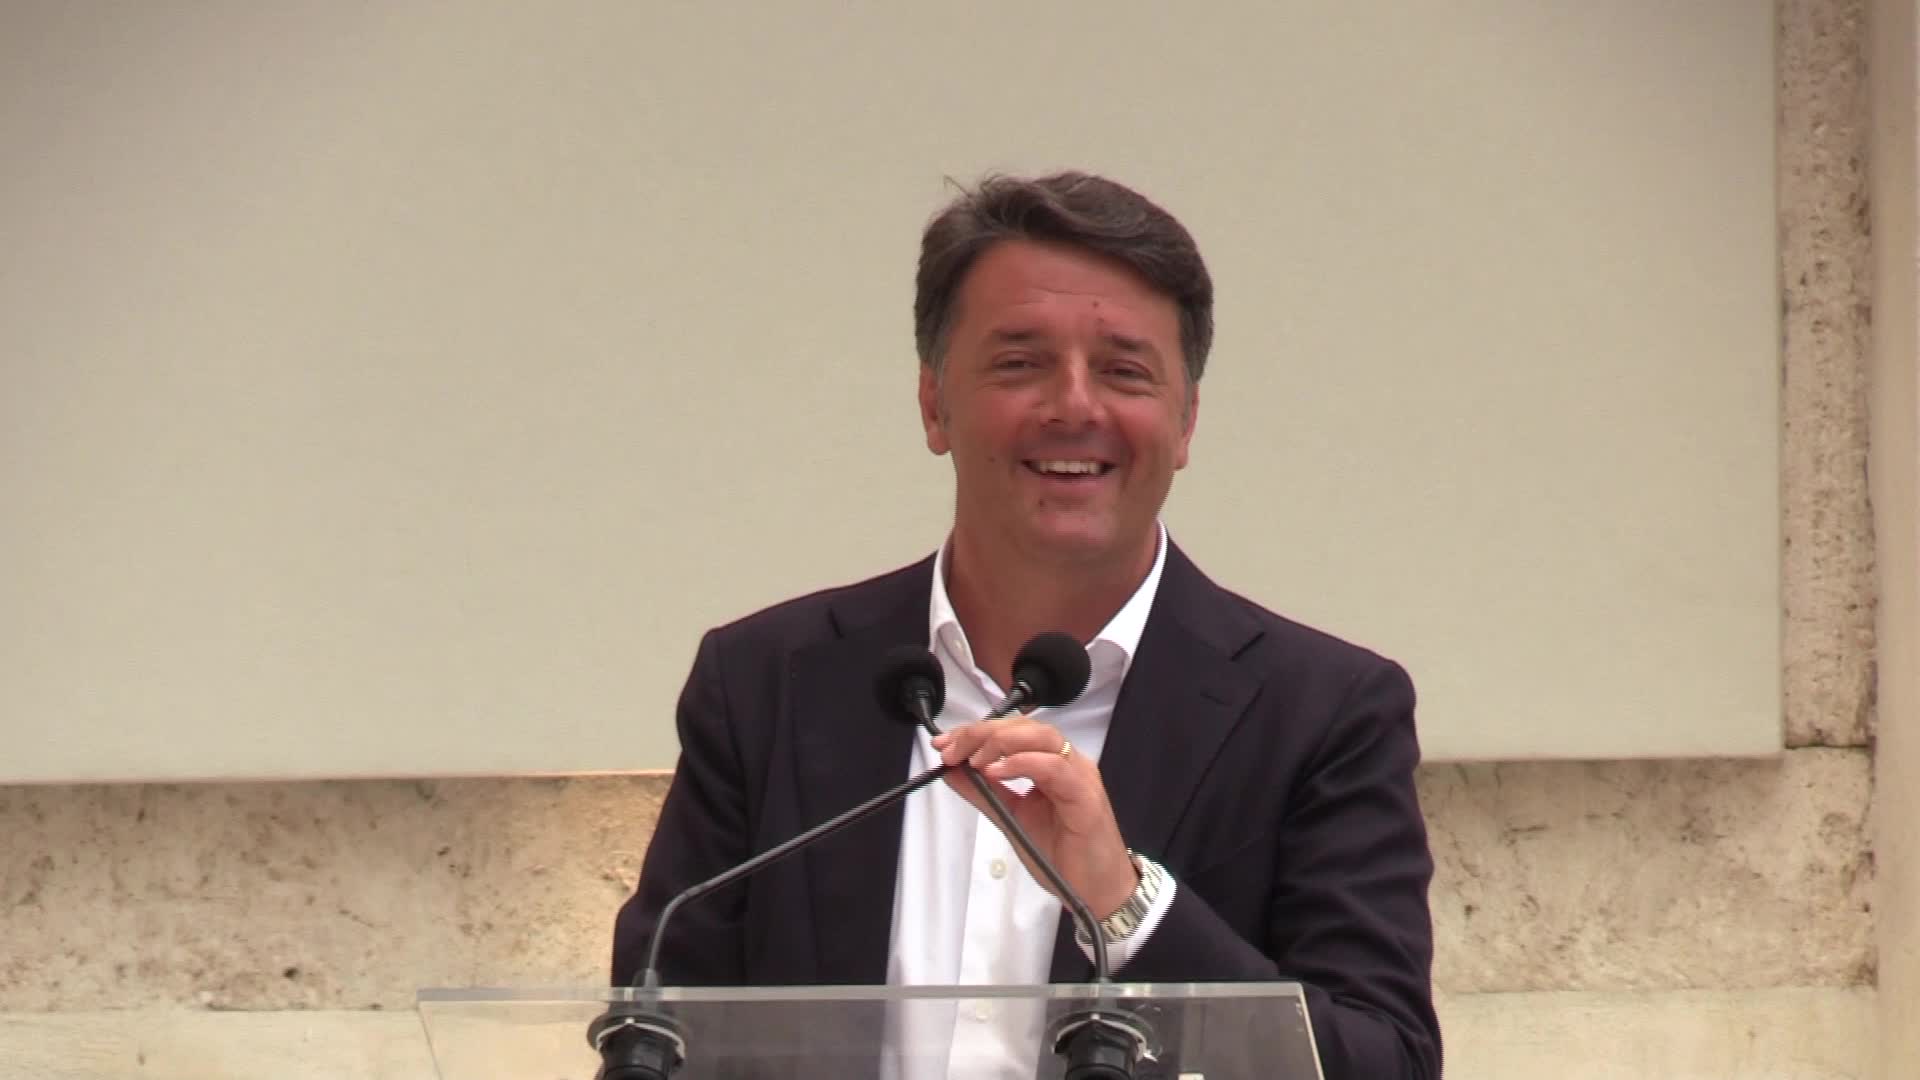 Governo, Renzi elogia Draghi in un’intervista al Ft. “È il migliore”